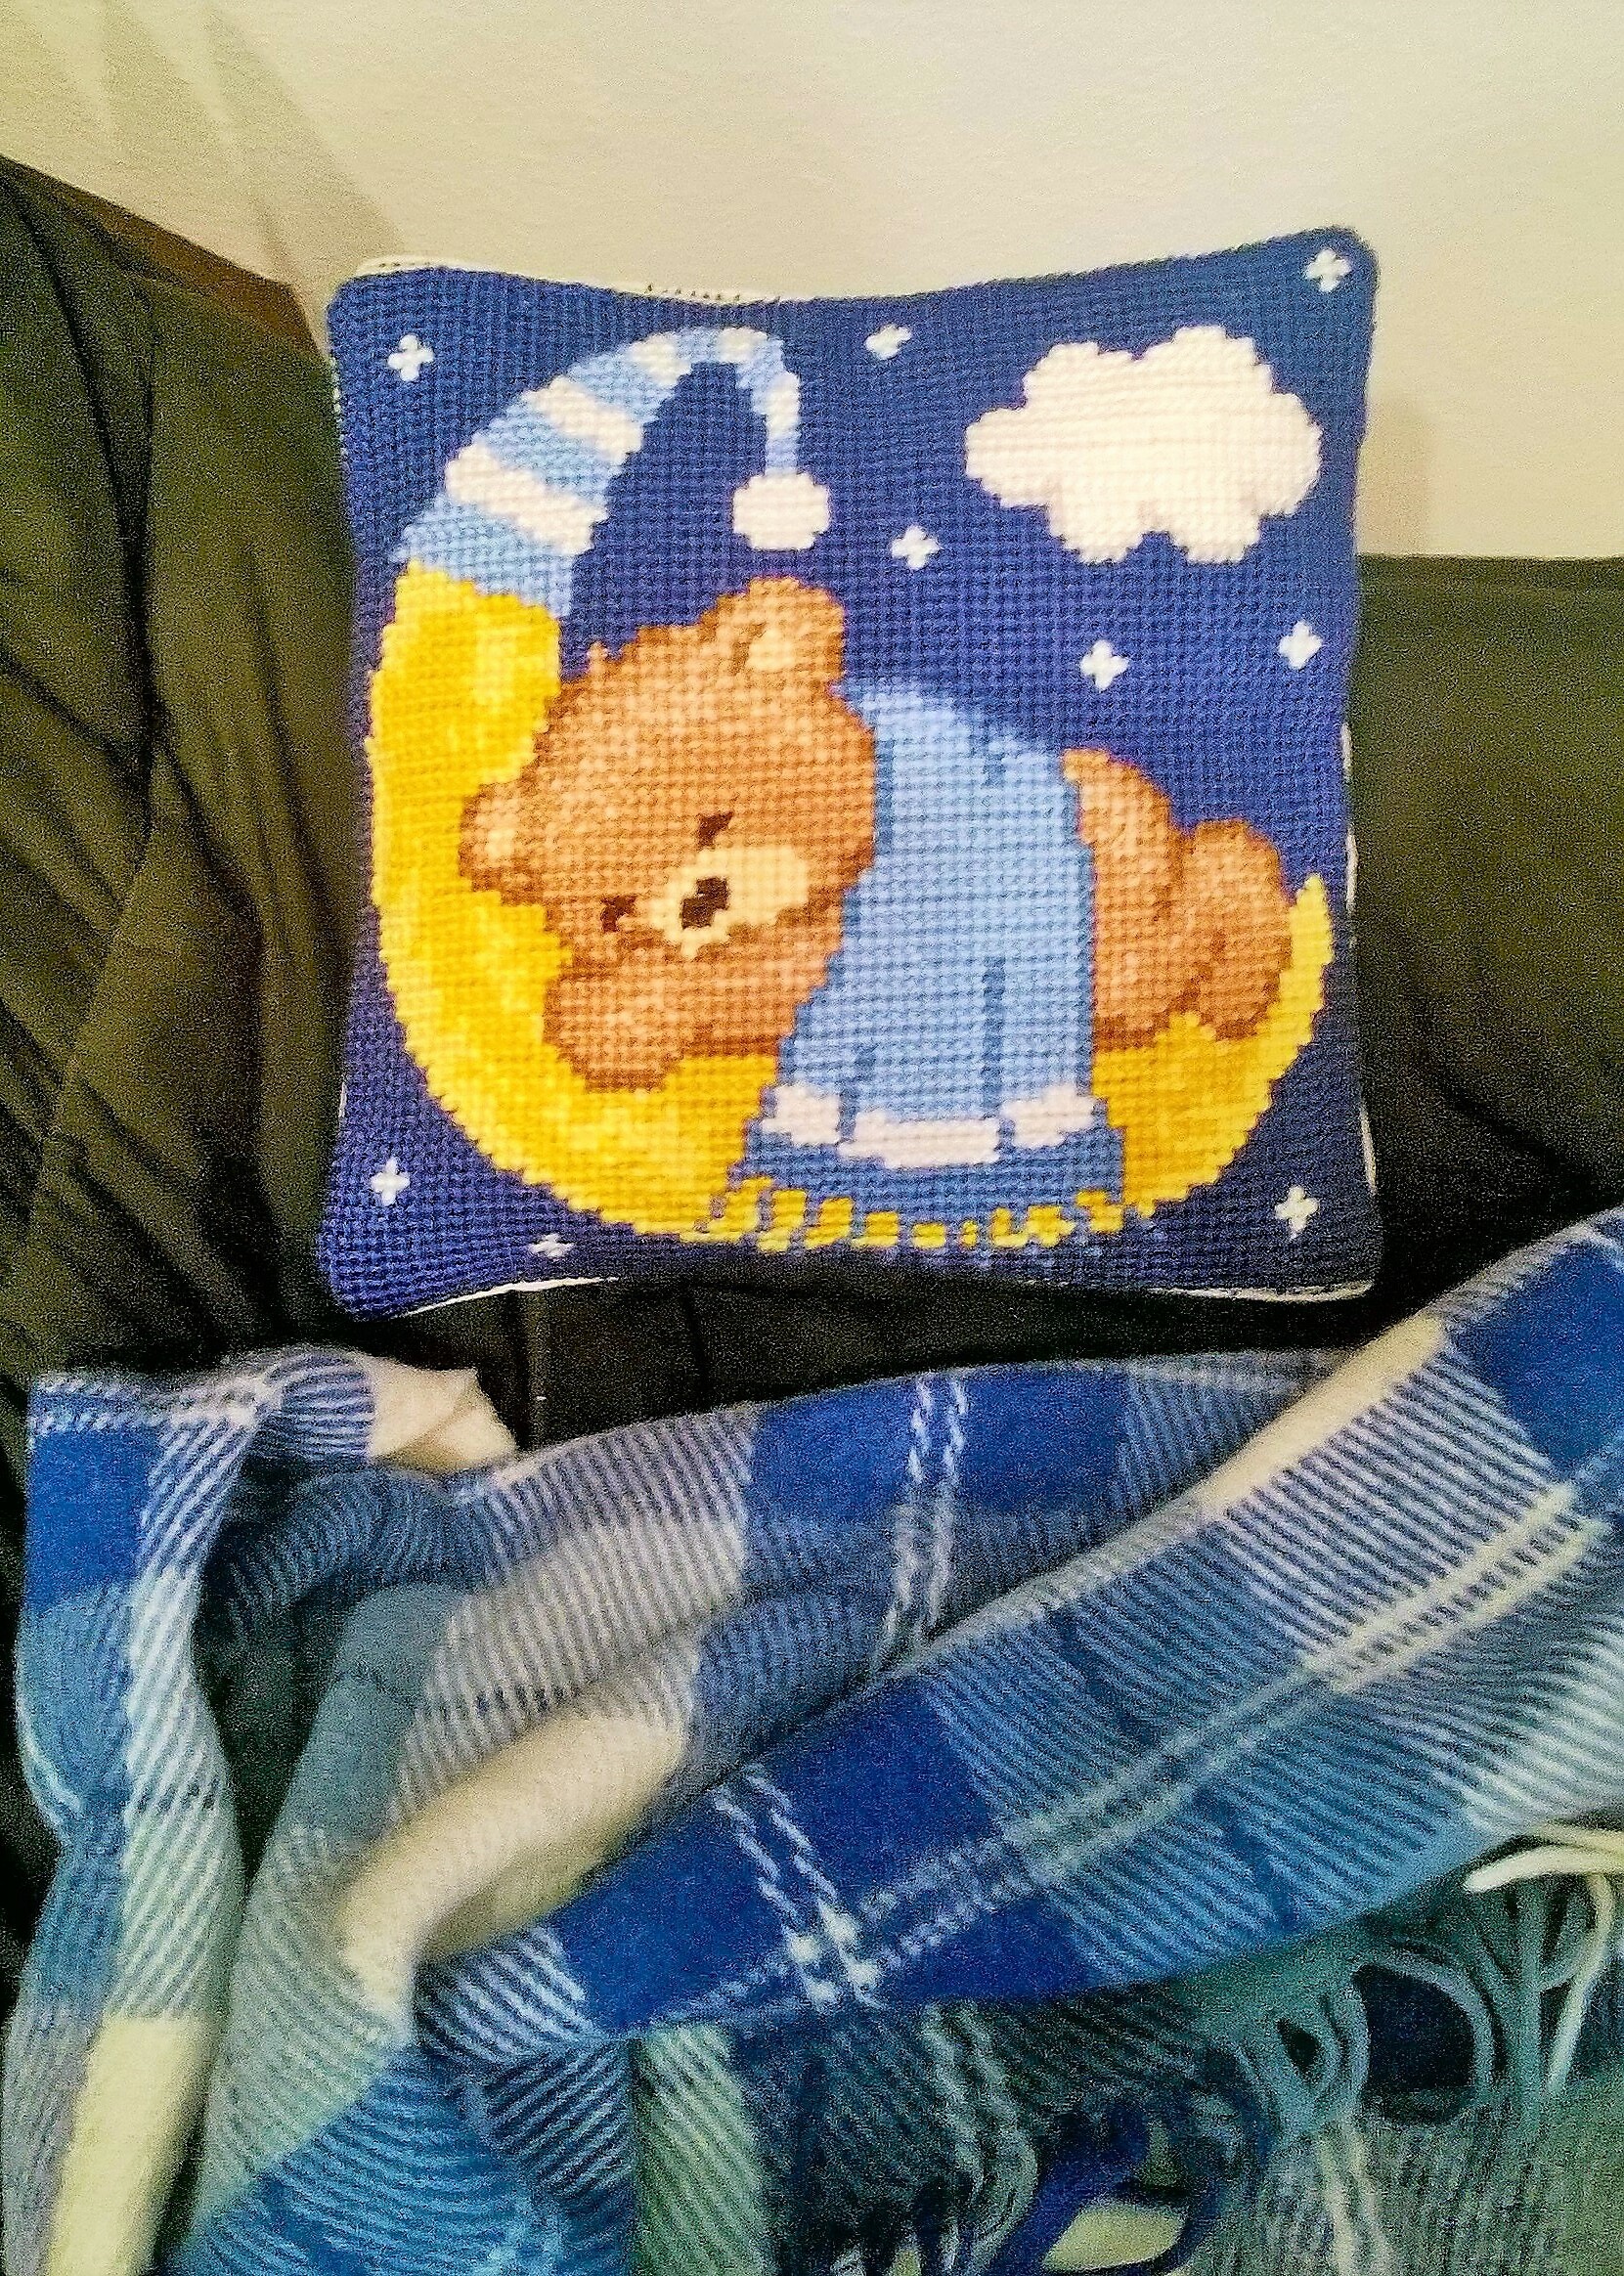 Мишка Тедди вышивка подушка ручная работа подарок мальчику декор детской